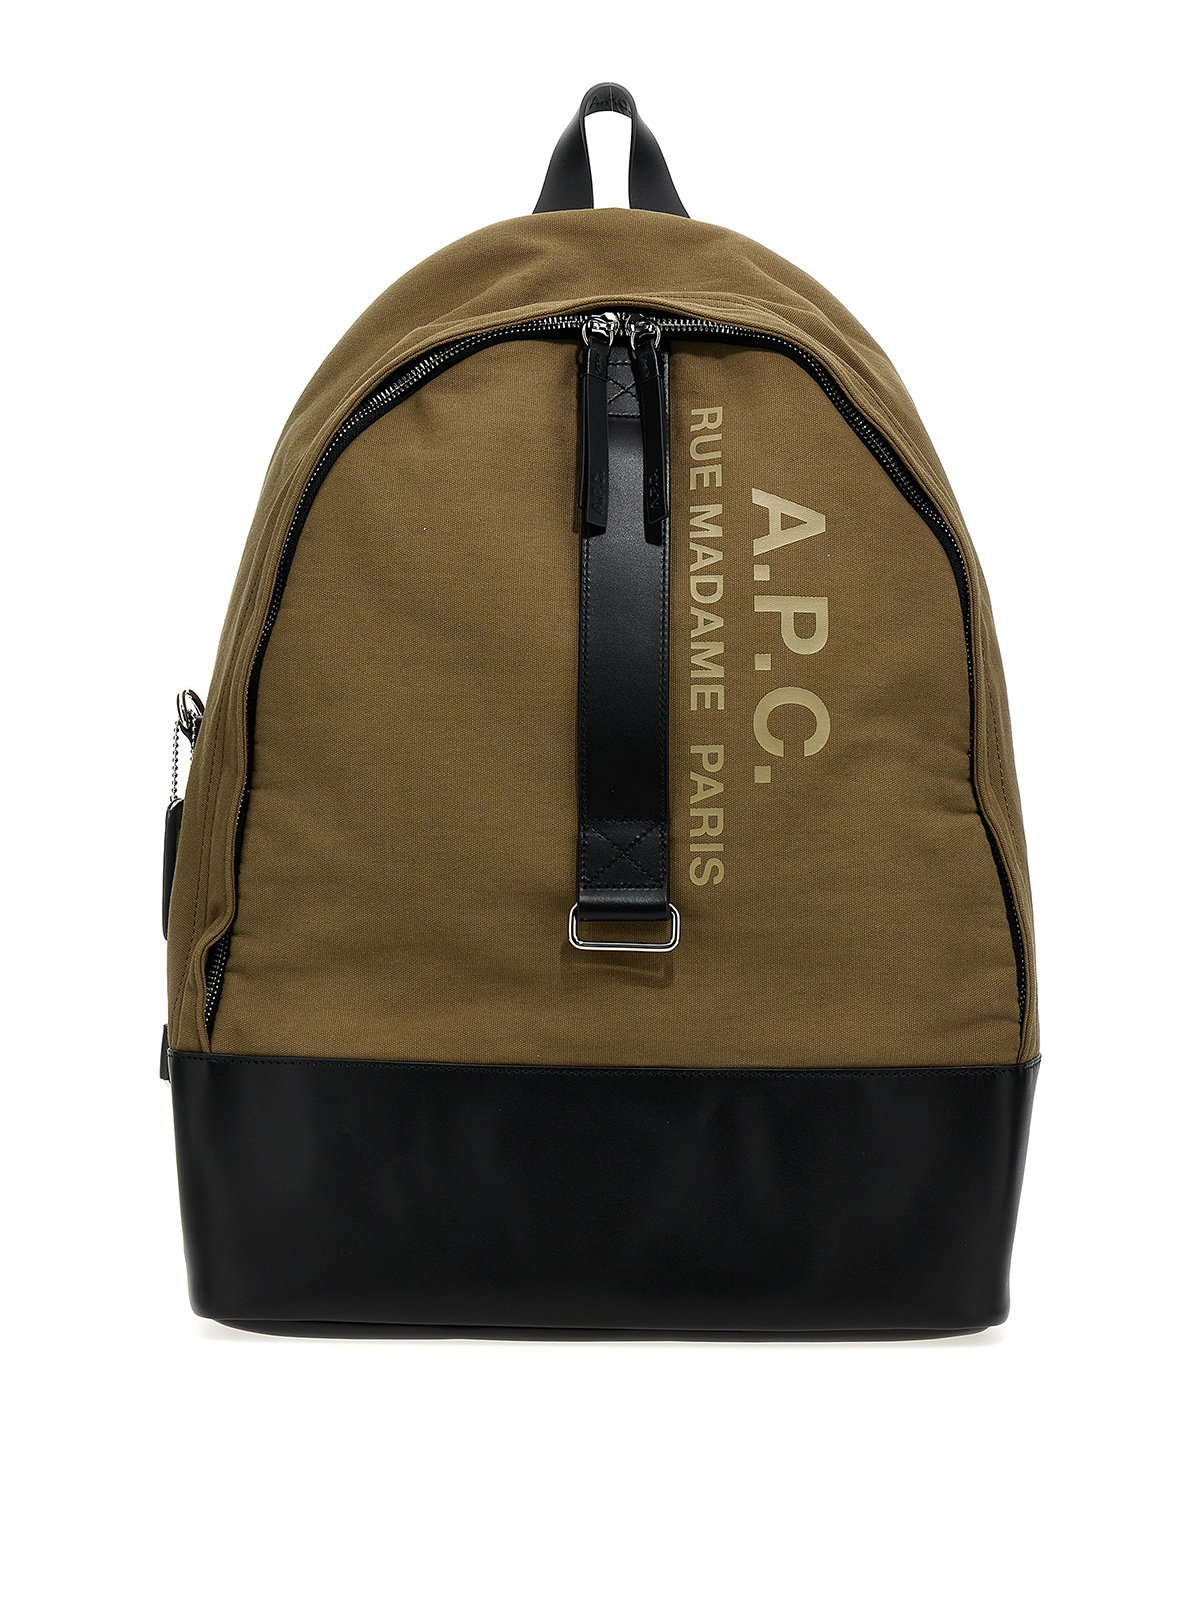 Apc Sac A Dos Sense Backpack In Beige